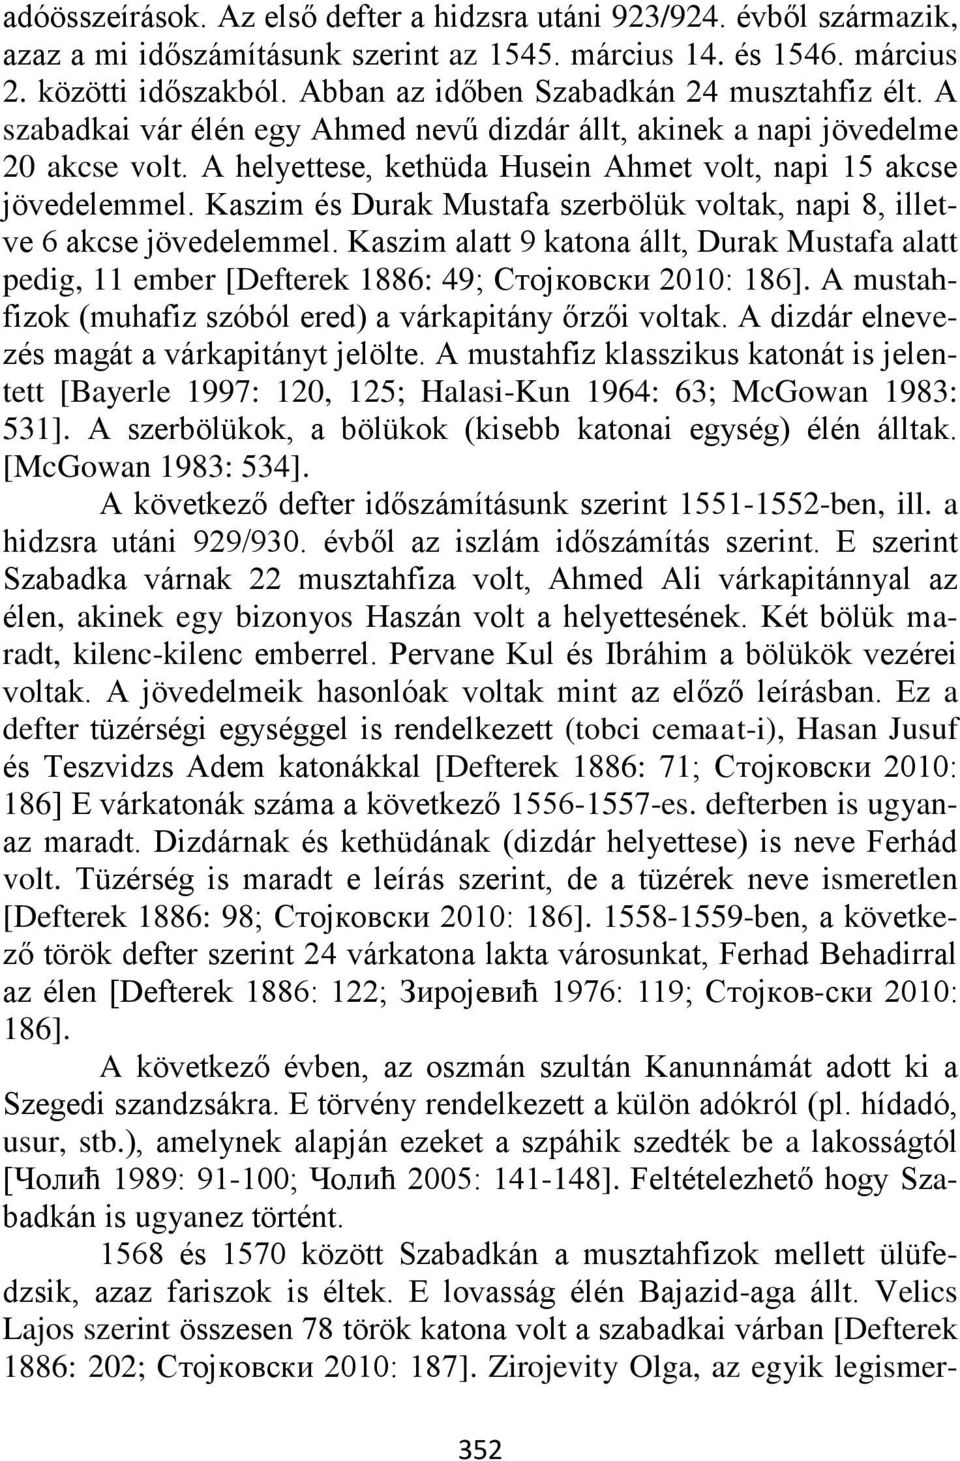 A helyettese, kethüda Husein Ahmet volt, napi 15 akcse jövedelemmel. Kaszim és Durak Mustafa szerbölük voltak, napi 8, illetve 6 akcse jövedelemmel.